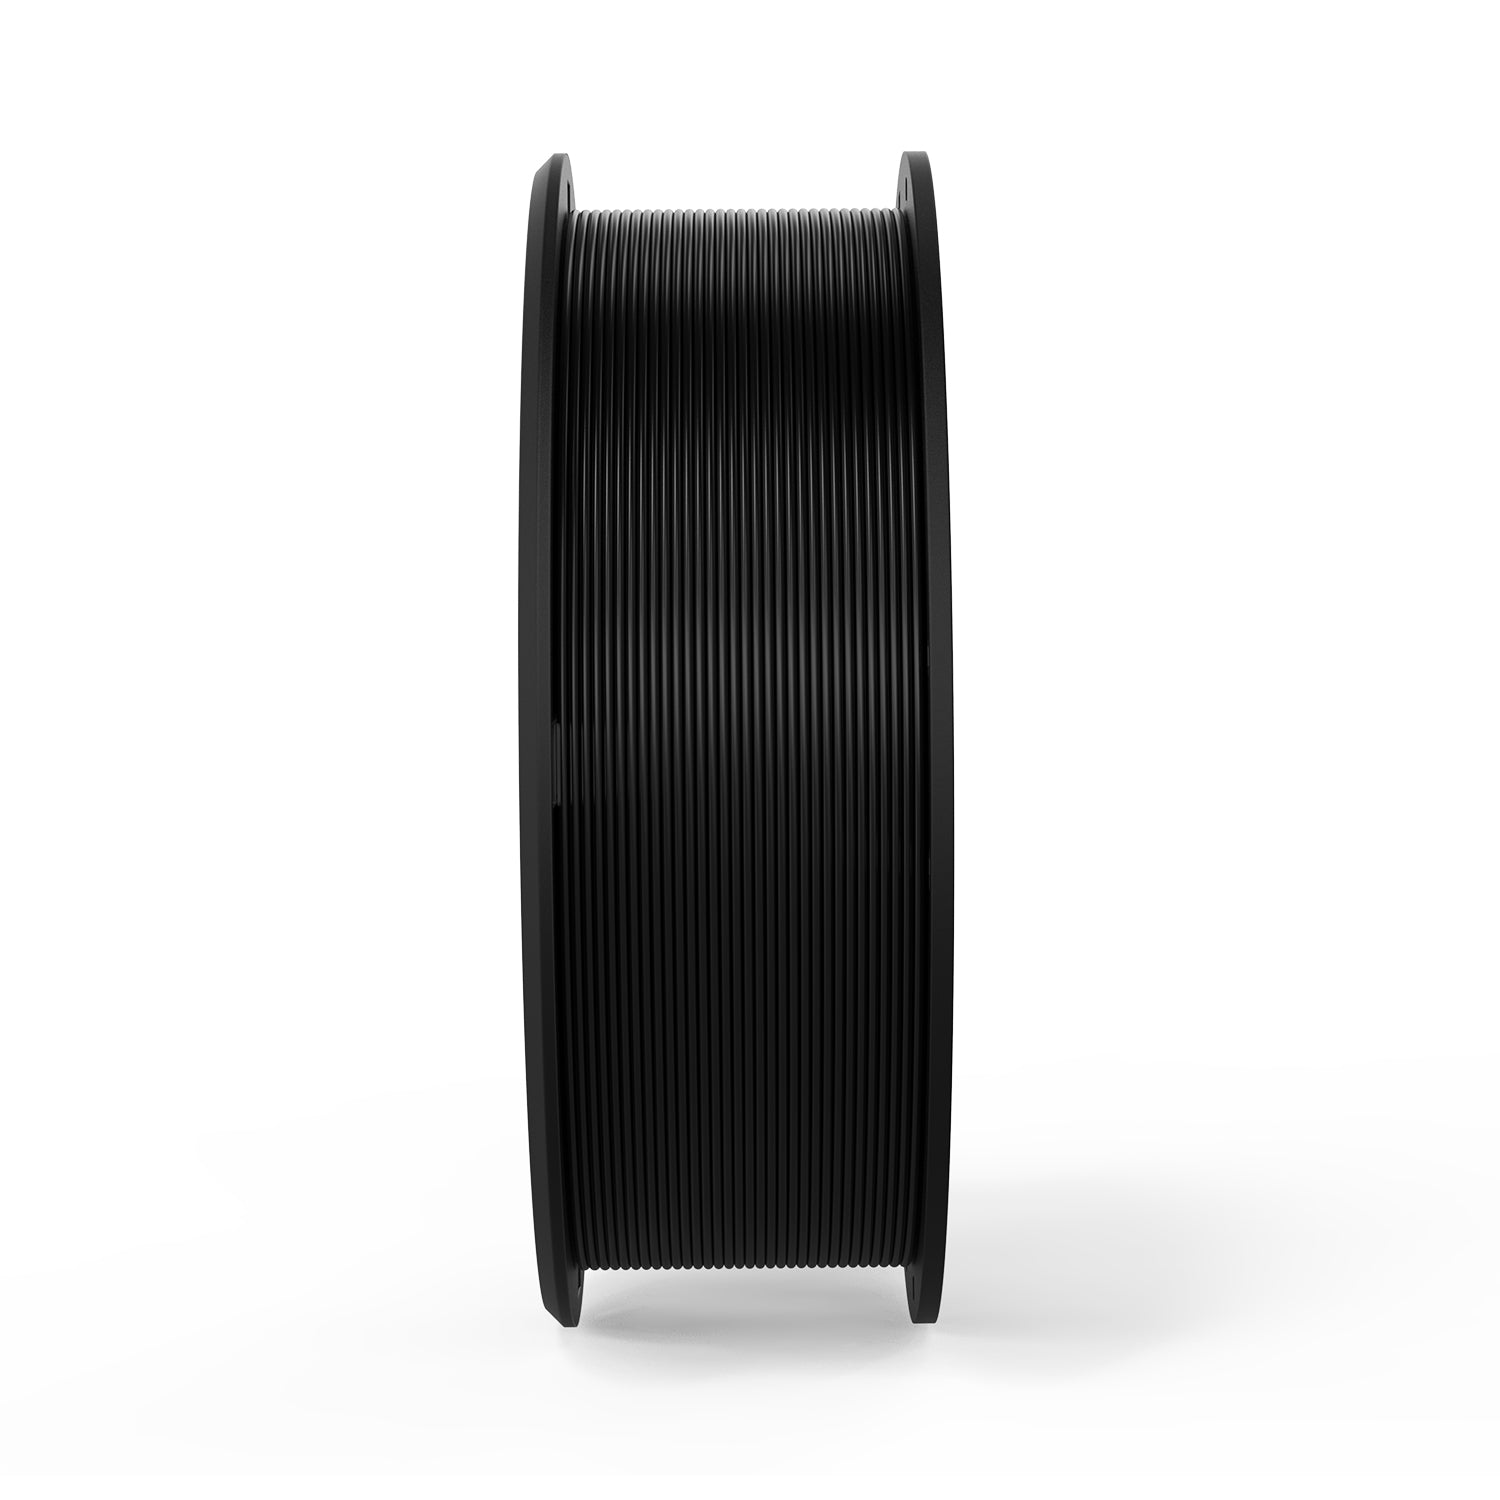 ERYONE Carbon Fiber PETG 3D Printer Filament 1.75mm, Dimensional Accuracy +/- 0.05 mm 1kg (2.2LBS)/Spool - eryone3d